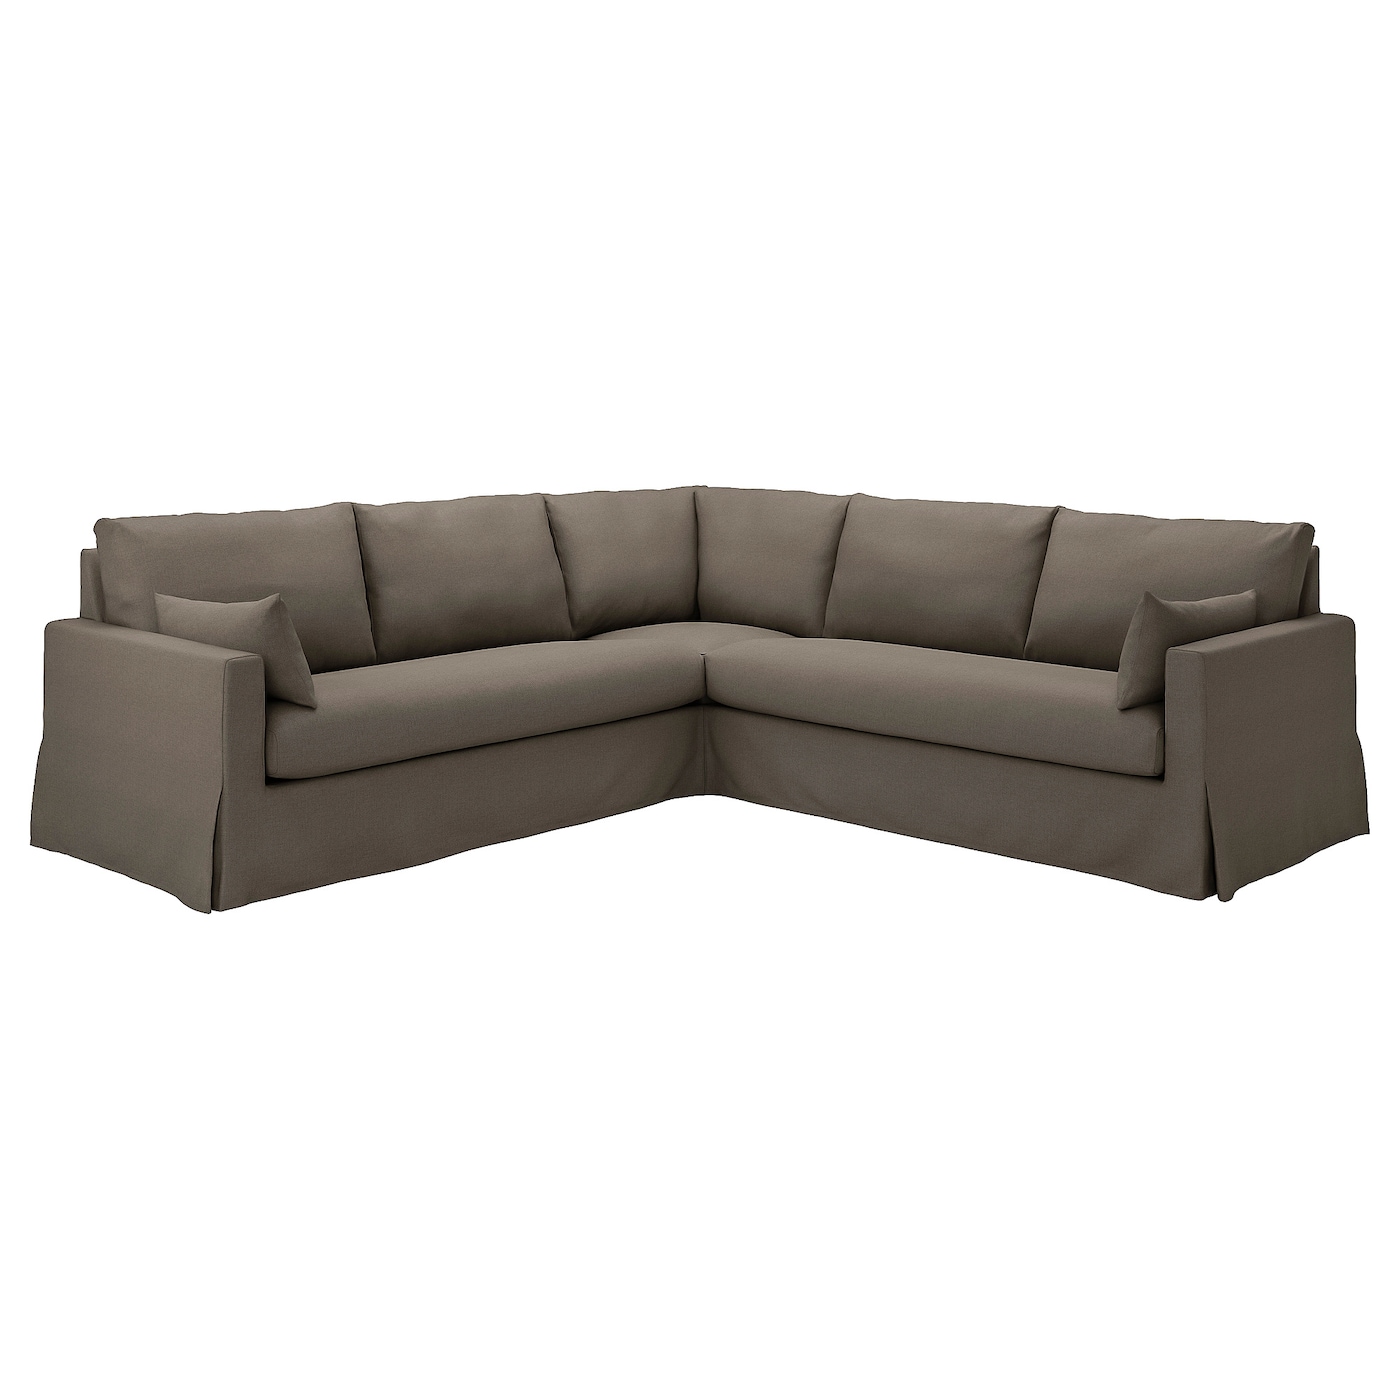 Чехол на угловой диван - HYLTARP IKEA/ ХУЛТАРП ИКЕА, коричневый